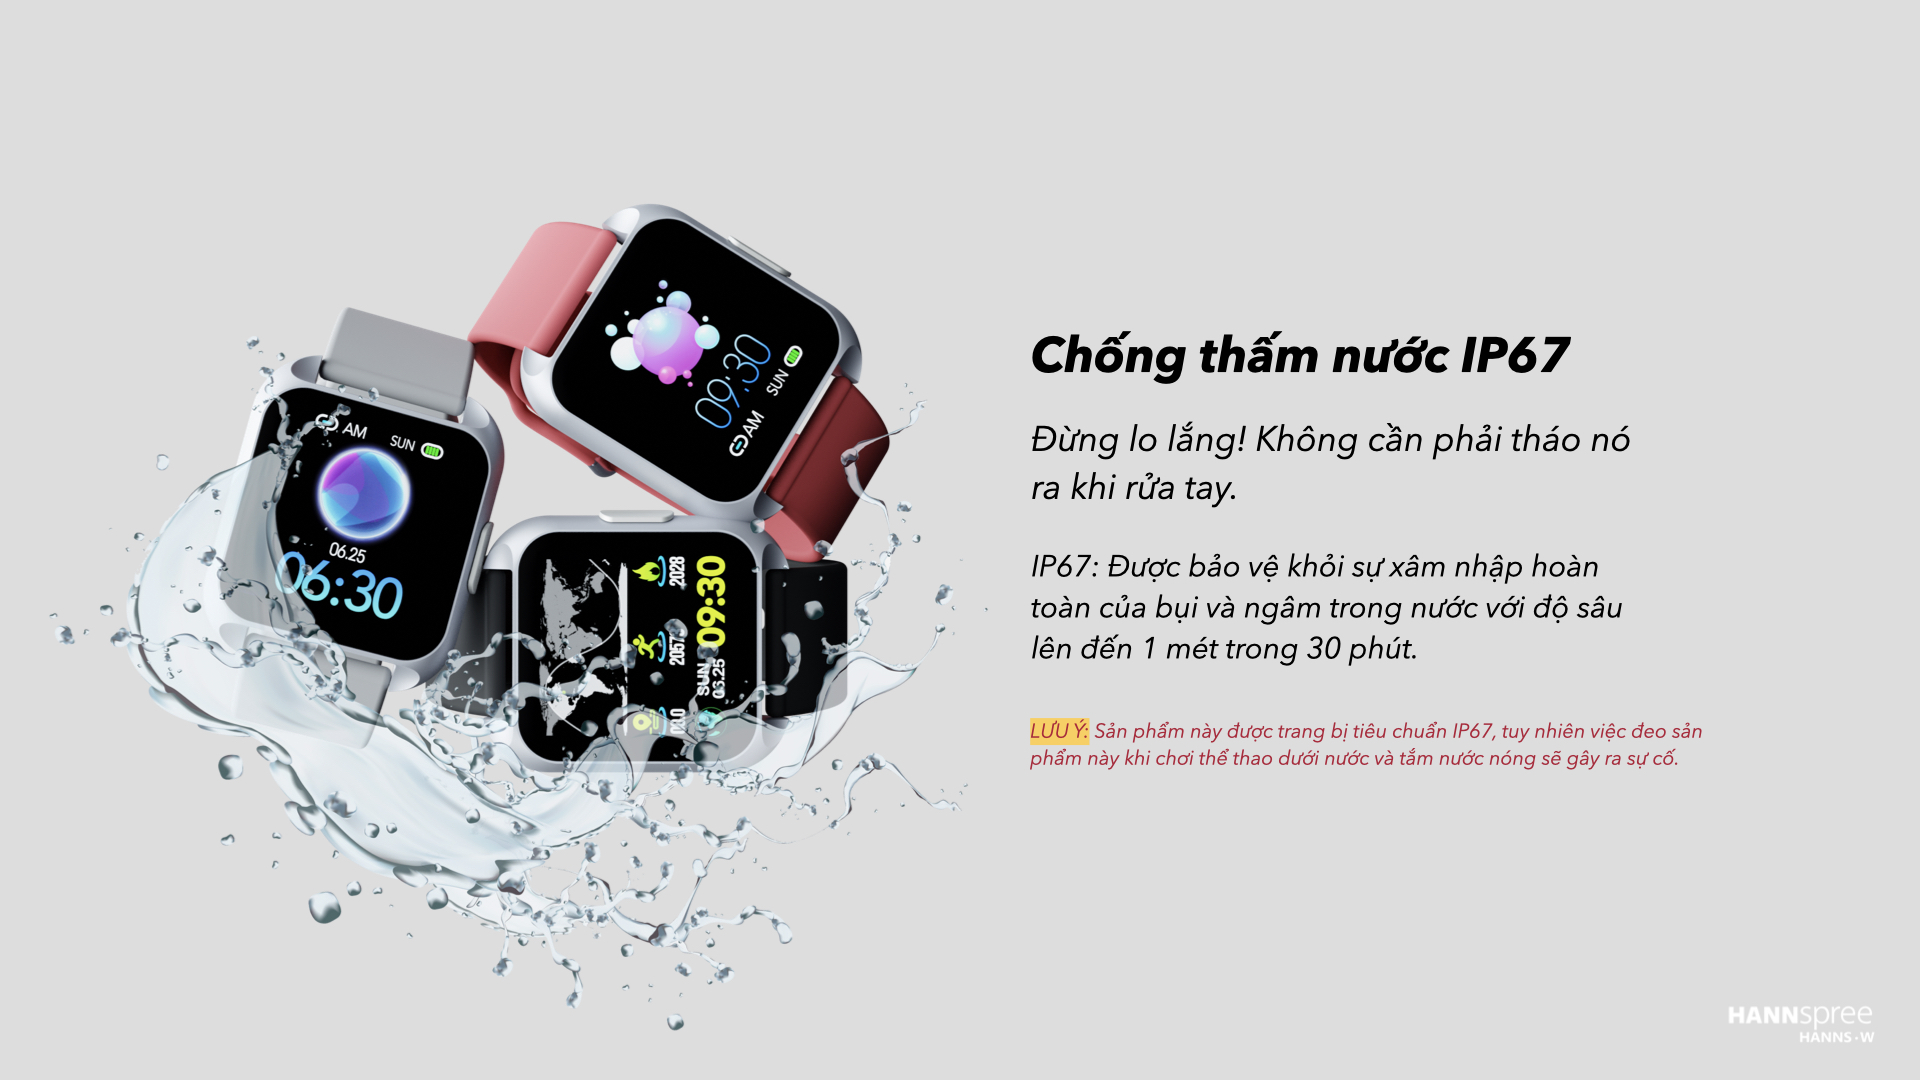 Đồng Hồ Thông Minh Hannspree Hanns.W S1 Ecg Smartwatch Đài Loan Đo Điện Tâm Đồ, Đo Huyết Áp, Đo Nồng Độ Oxy Trong Máu Spo2, Thông Báo Tin Nhắn Và Cuộc Gọi Đến Dùng Cho Iphone, Android (Hàng Nhập Khẩu) 16